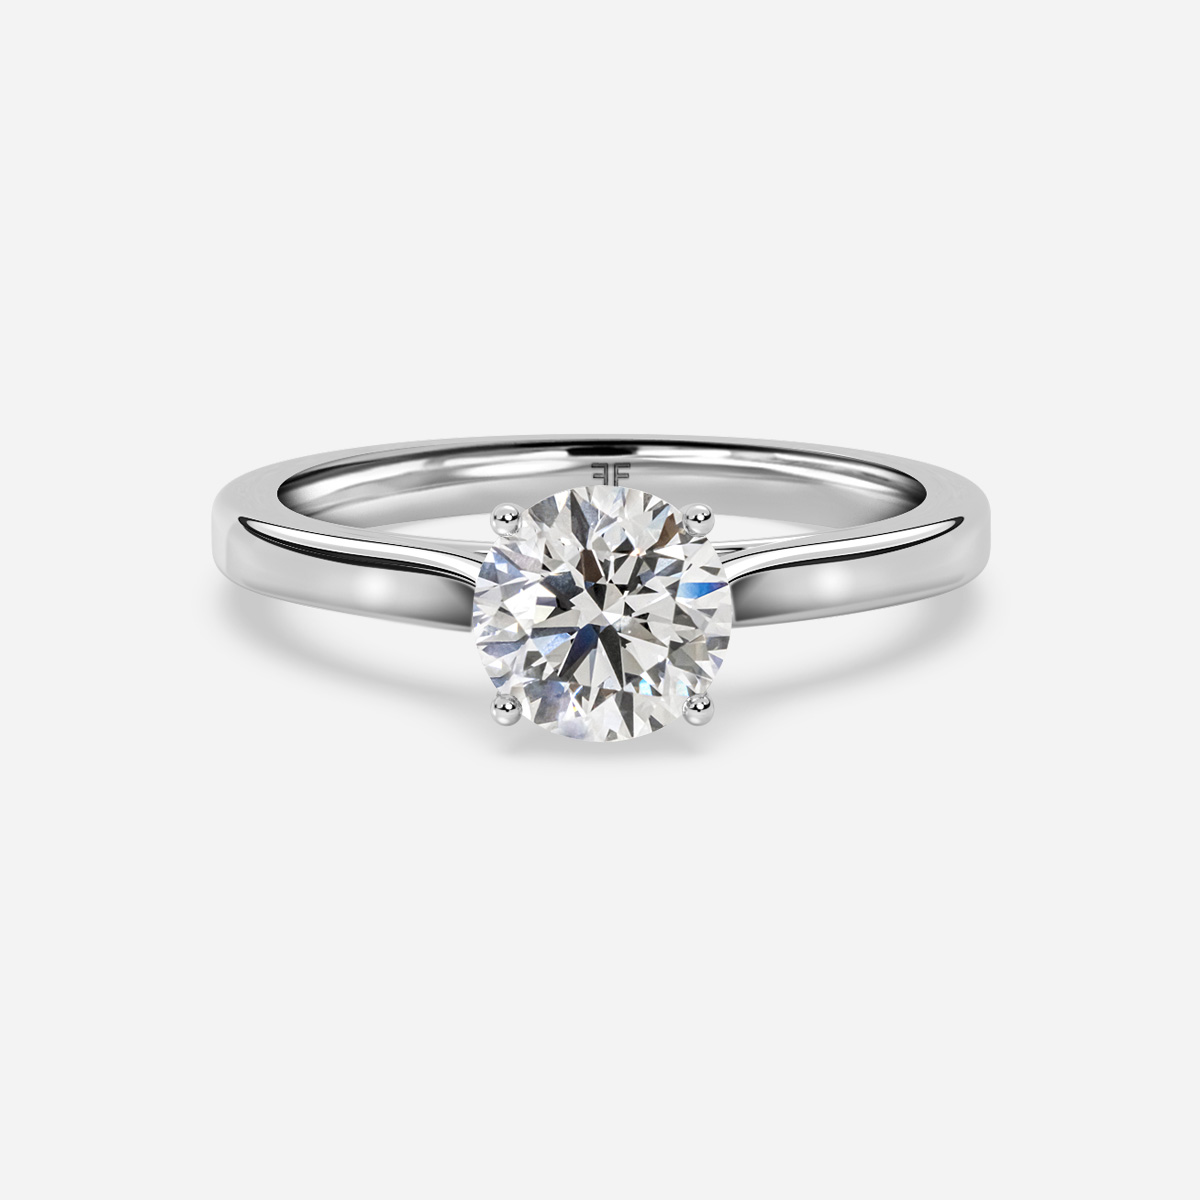 Hatton Garden Jewellers - Diamond Experts – Durrants London